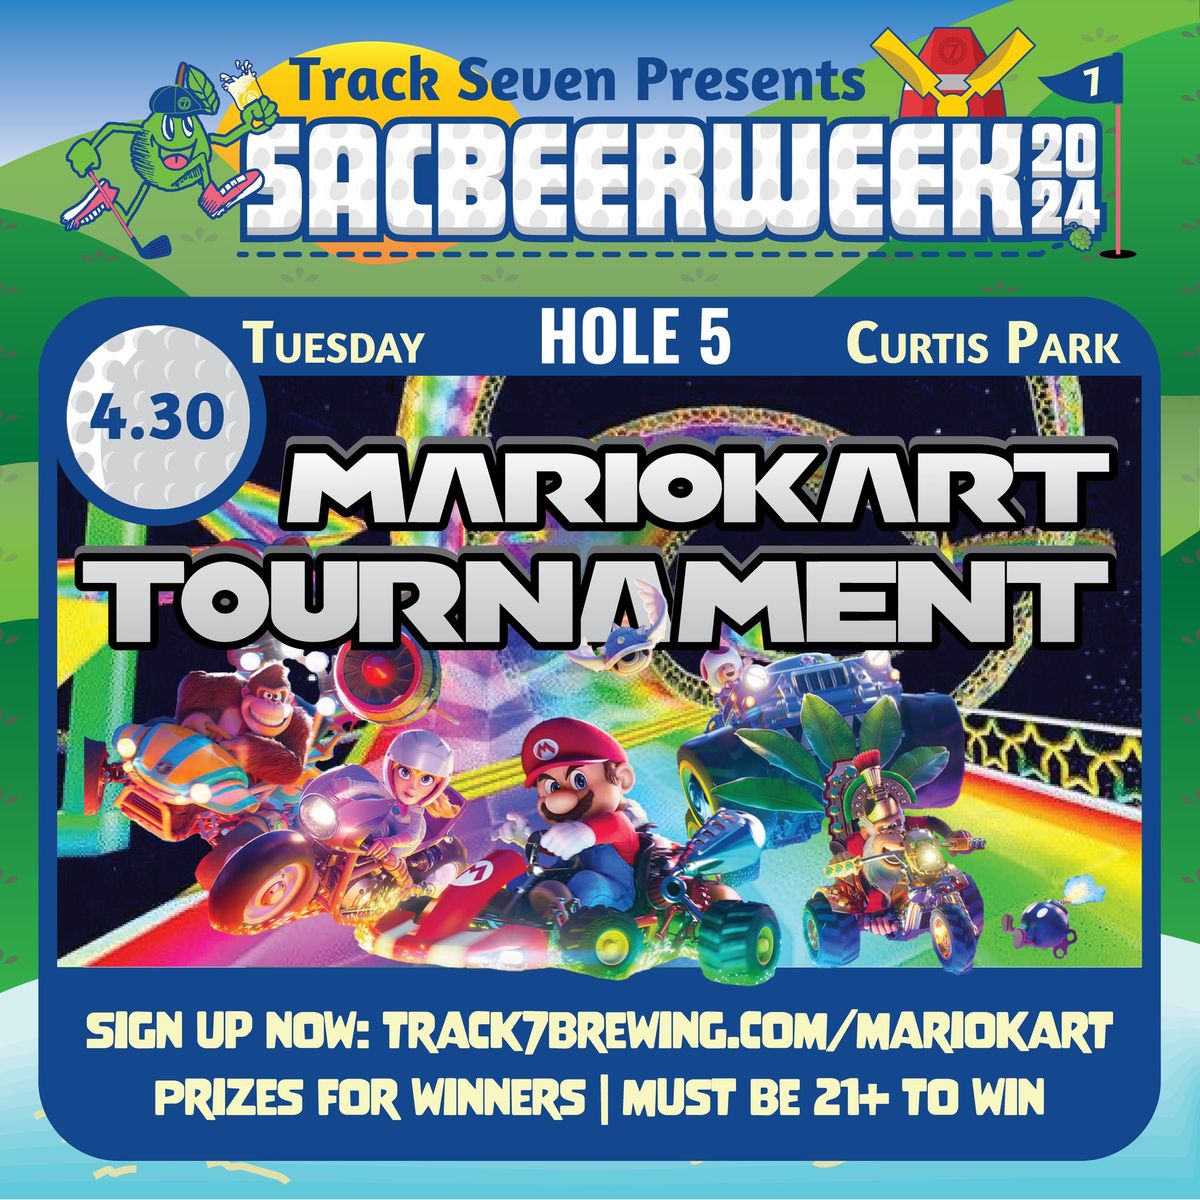 SBW24: Mario Kart Tournament